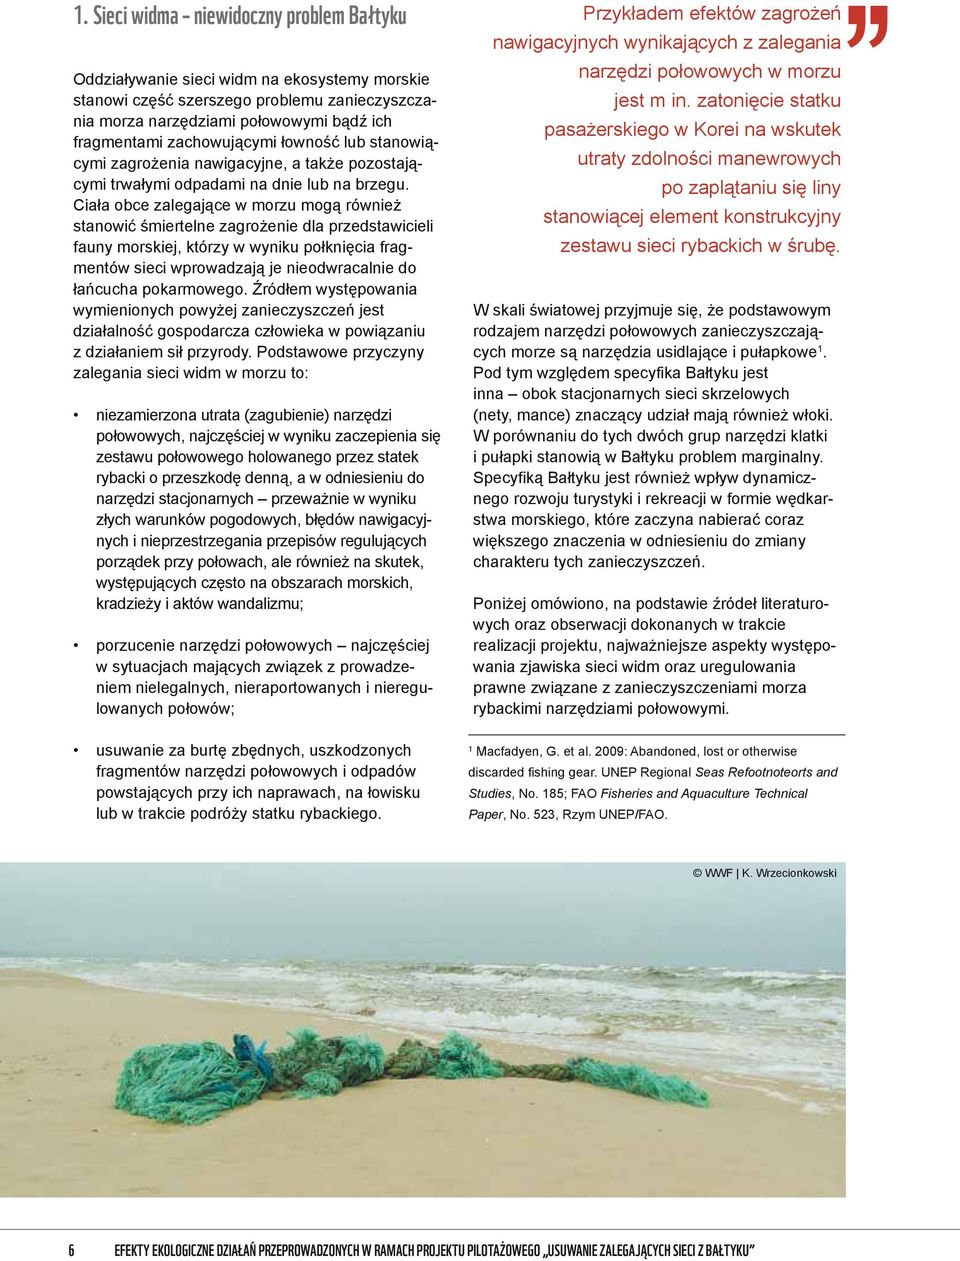 Ciała obce zalegające w morzu mogą również stanowić śmiertelne zagrożenie dla przedstawicieli fauny morskiej, którzy w wyniku połknięcia fragmentów sieci wprowadzają je nieodwracalnie do łańcucha